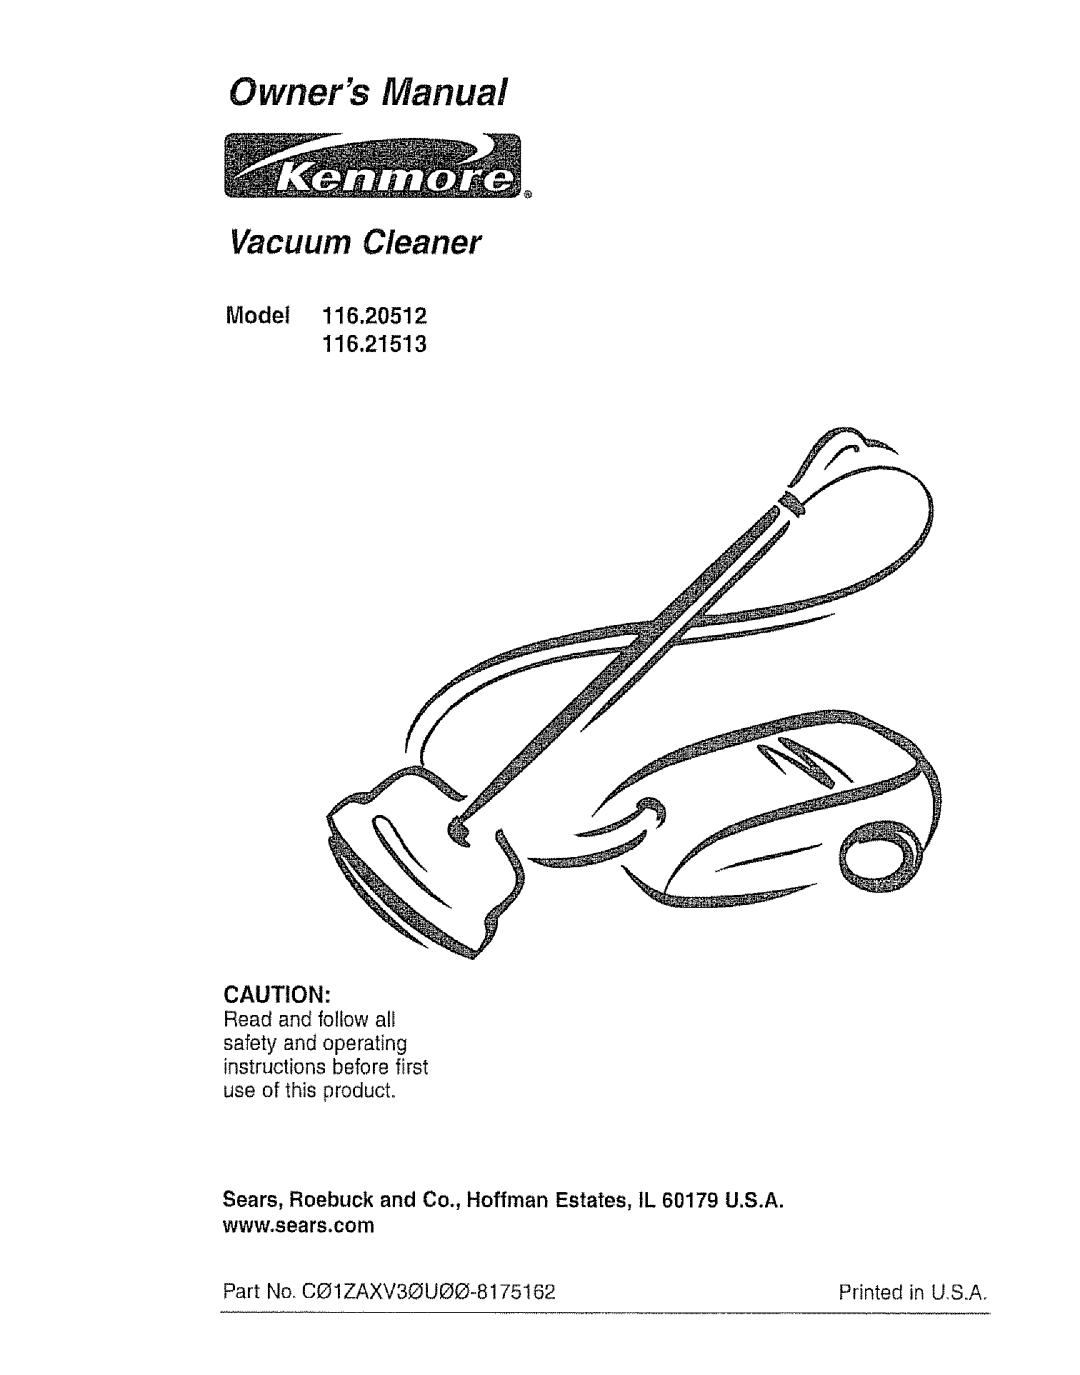 Kenmore 116.21513, 116.20512 owner manual Vacuum Cleaner, Model 